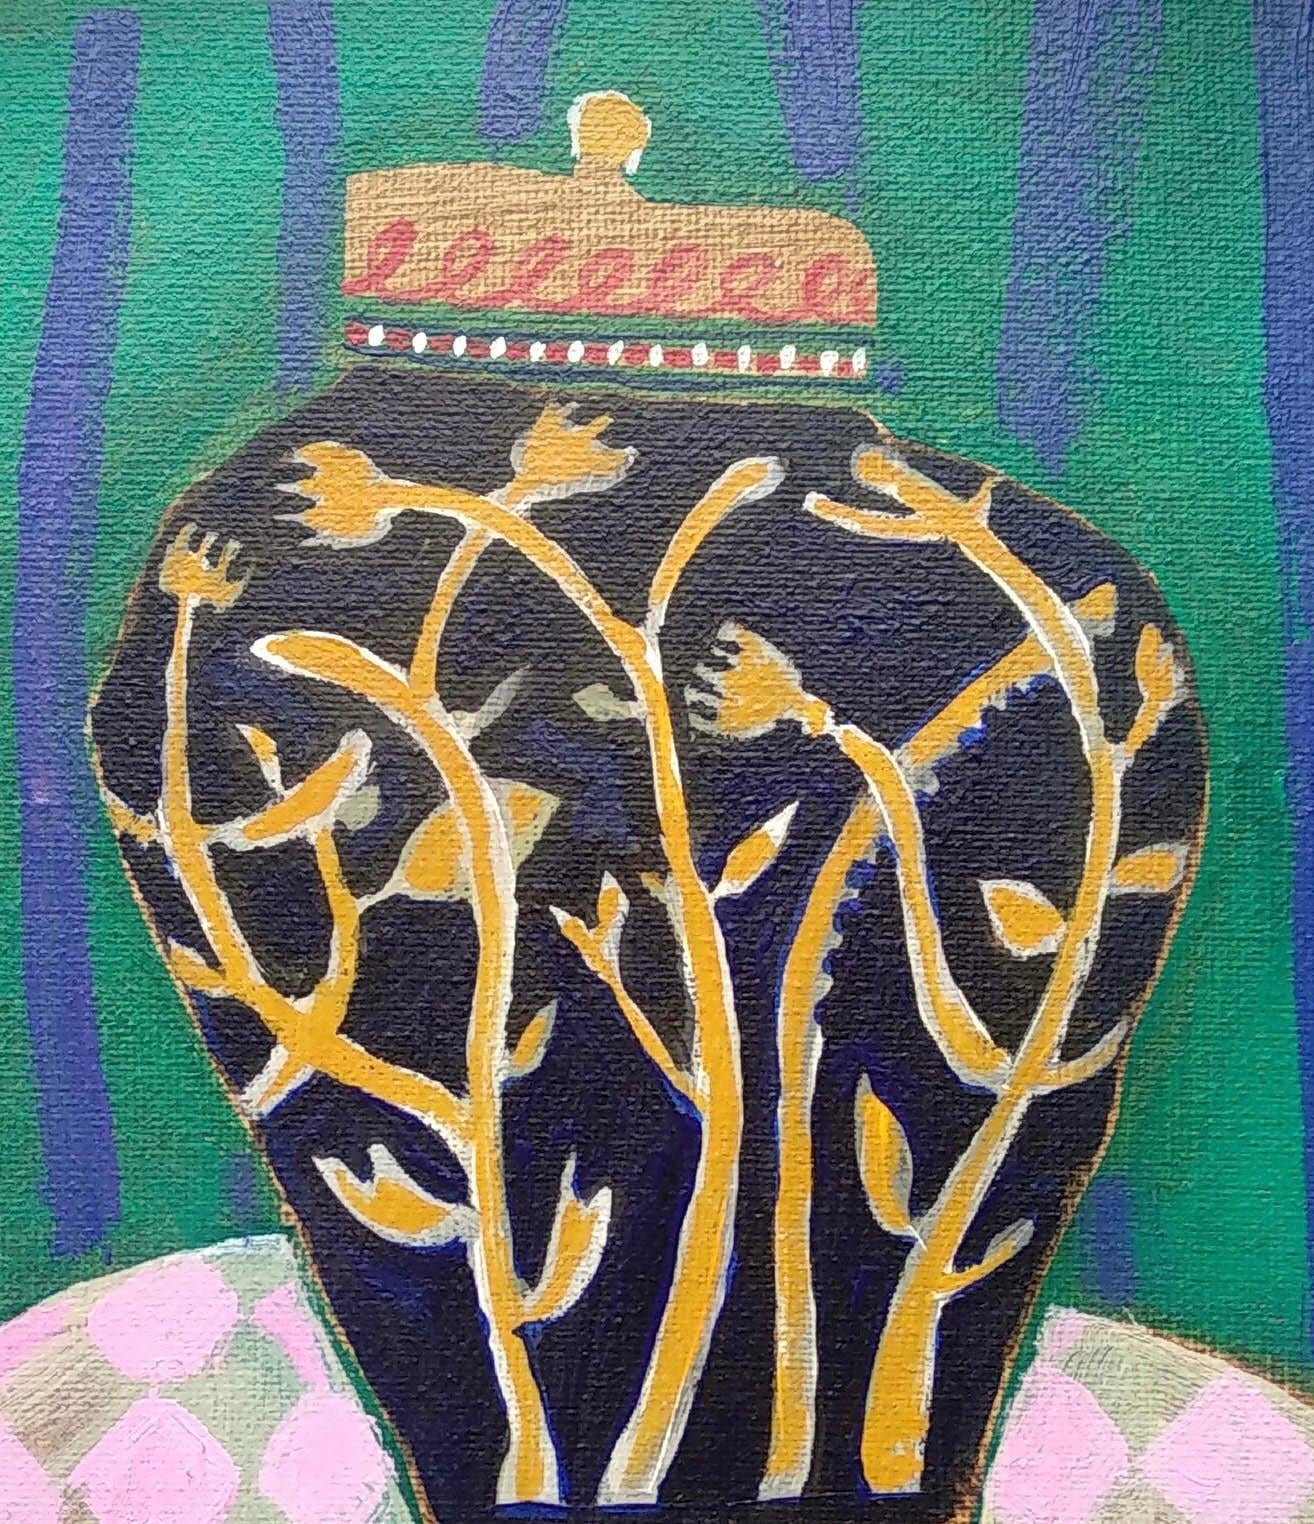 Joyeux pot de gingembre dans une pièce colorée, cette pièce s'inspire un peu de Matisse avec le mur rayé et les motifs organiques du vase. Peint à l'acrylique sur une toile aux bords très profonds, le cadre en bois teinté foncé (brun-noir) a une